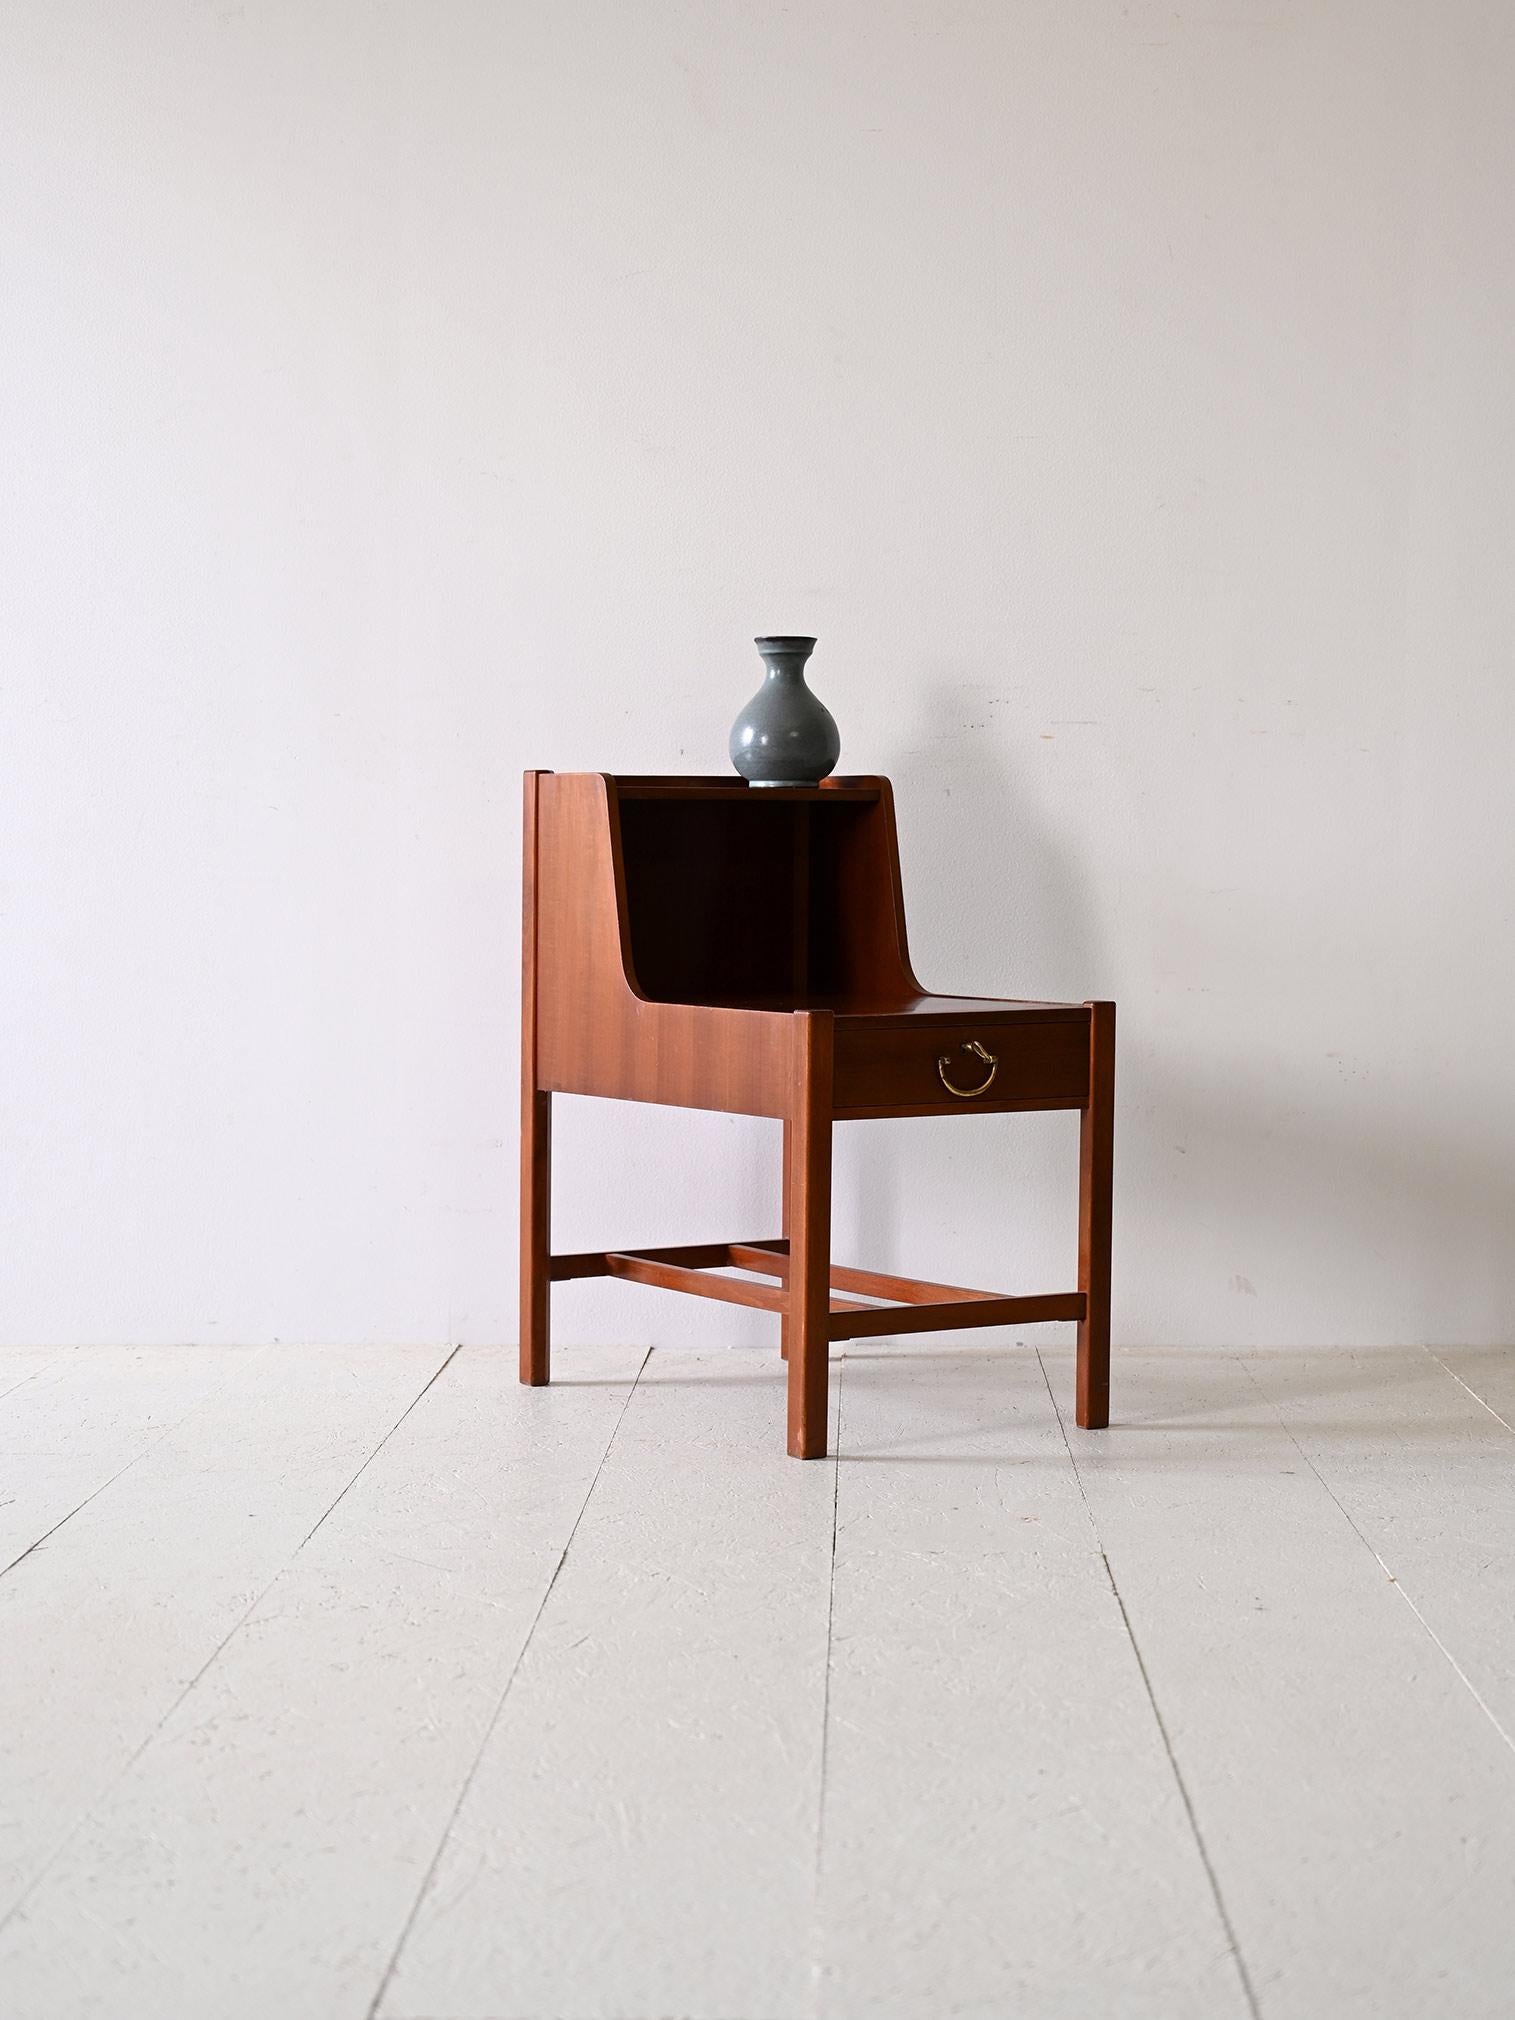 Nachttisch aus schwedischem Teakholz von David Rosén.

Seine ungewöhnliche Form, die durch die doppelte Ablagefläche gegeben ist, verleiht ihm eine besondere Note. Sie eignet sich perfekt, um eine Lampe auf der ersten Ablagefläche zu platzieren und